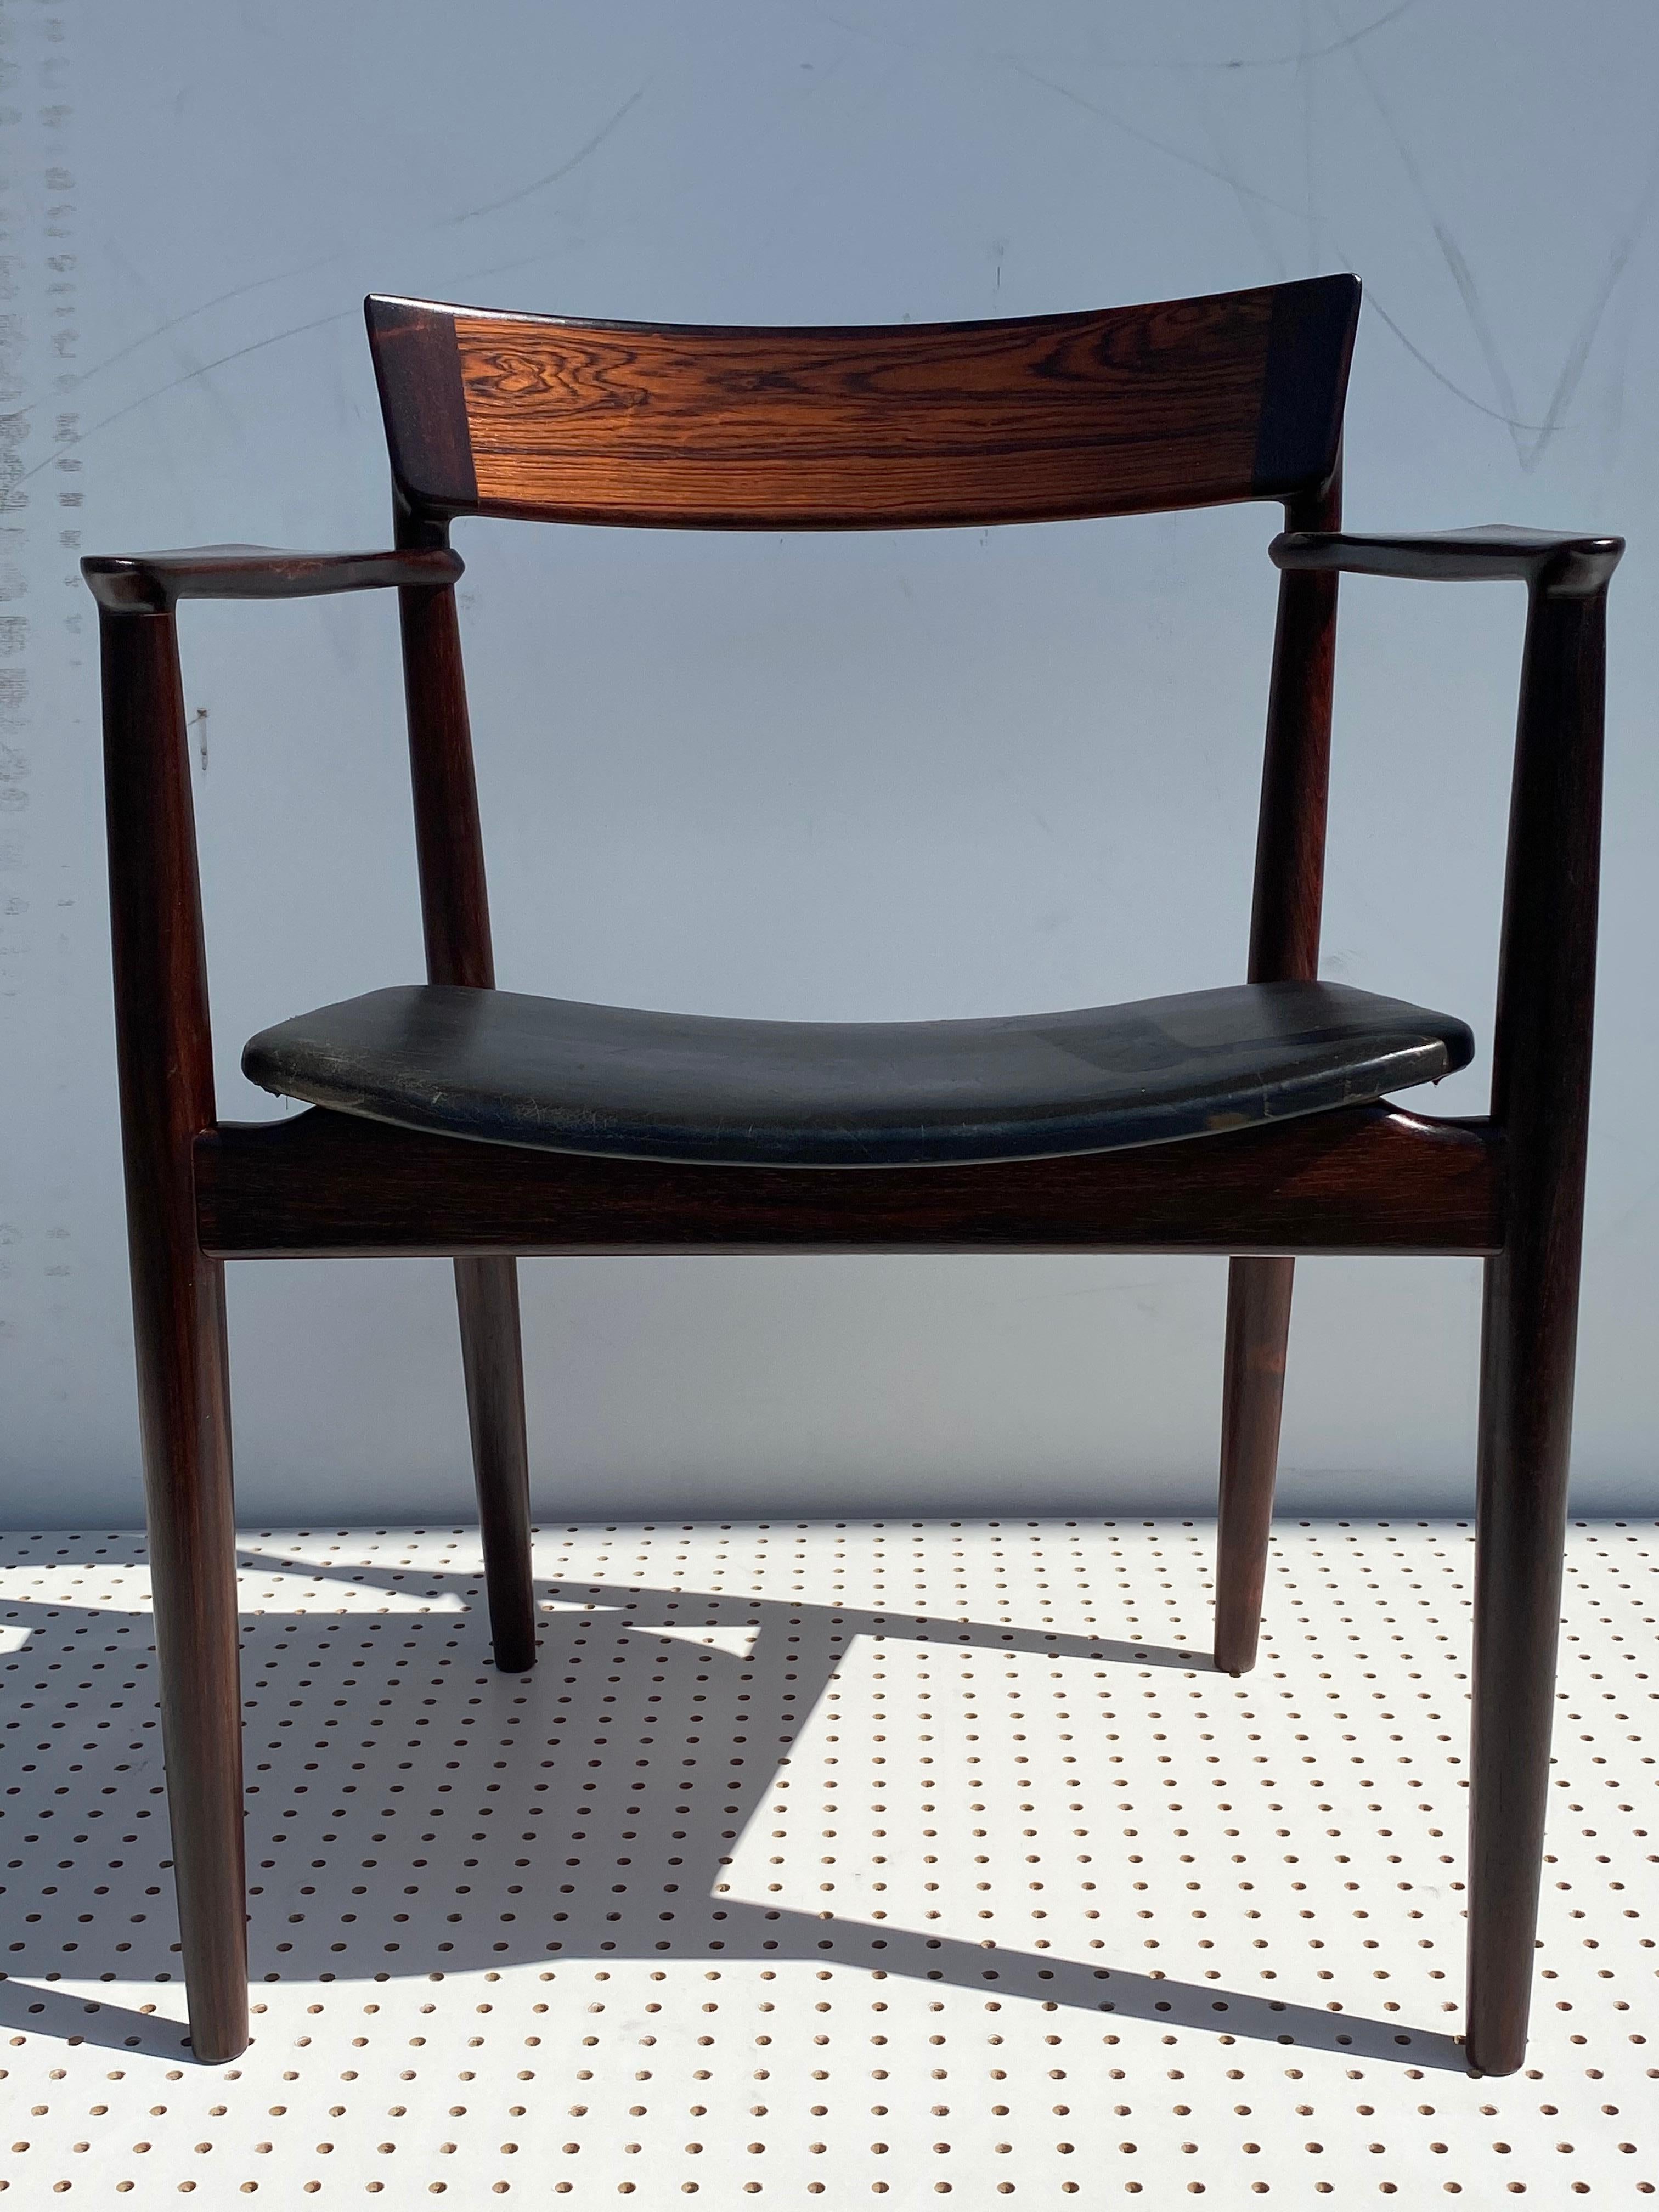 Bureau/fauteuil en bois de rose avec cuir noir d'origine dans le style de Niels Vodder.
Mesures : Le siège fait 16,5